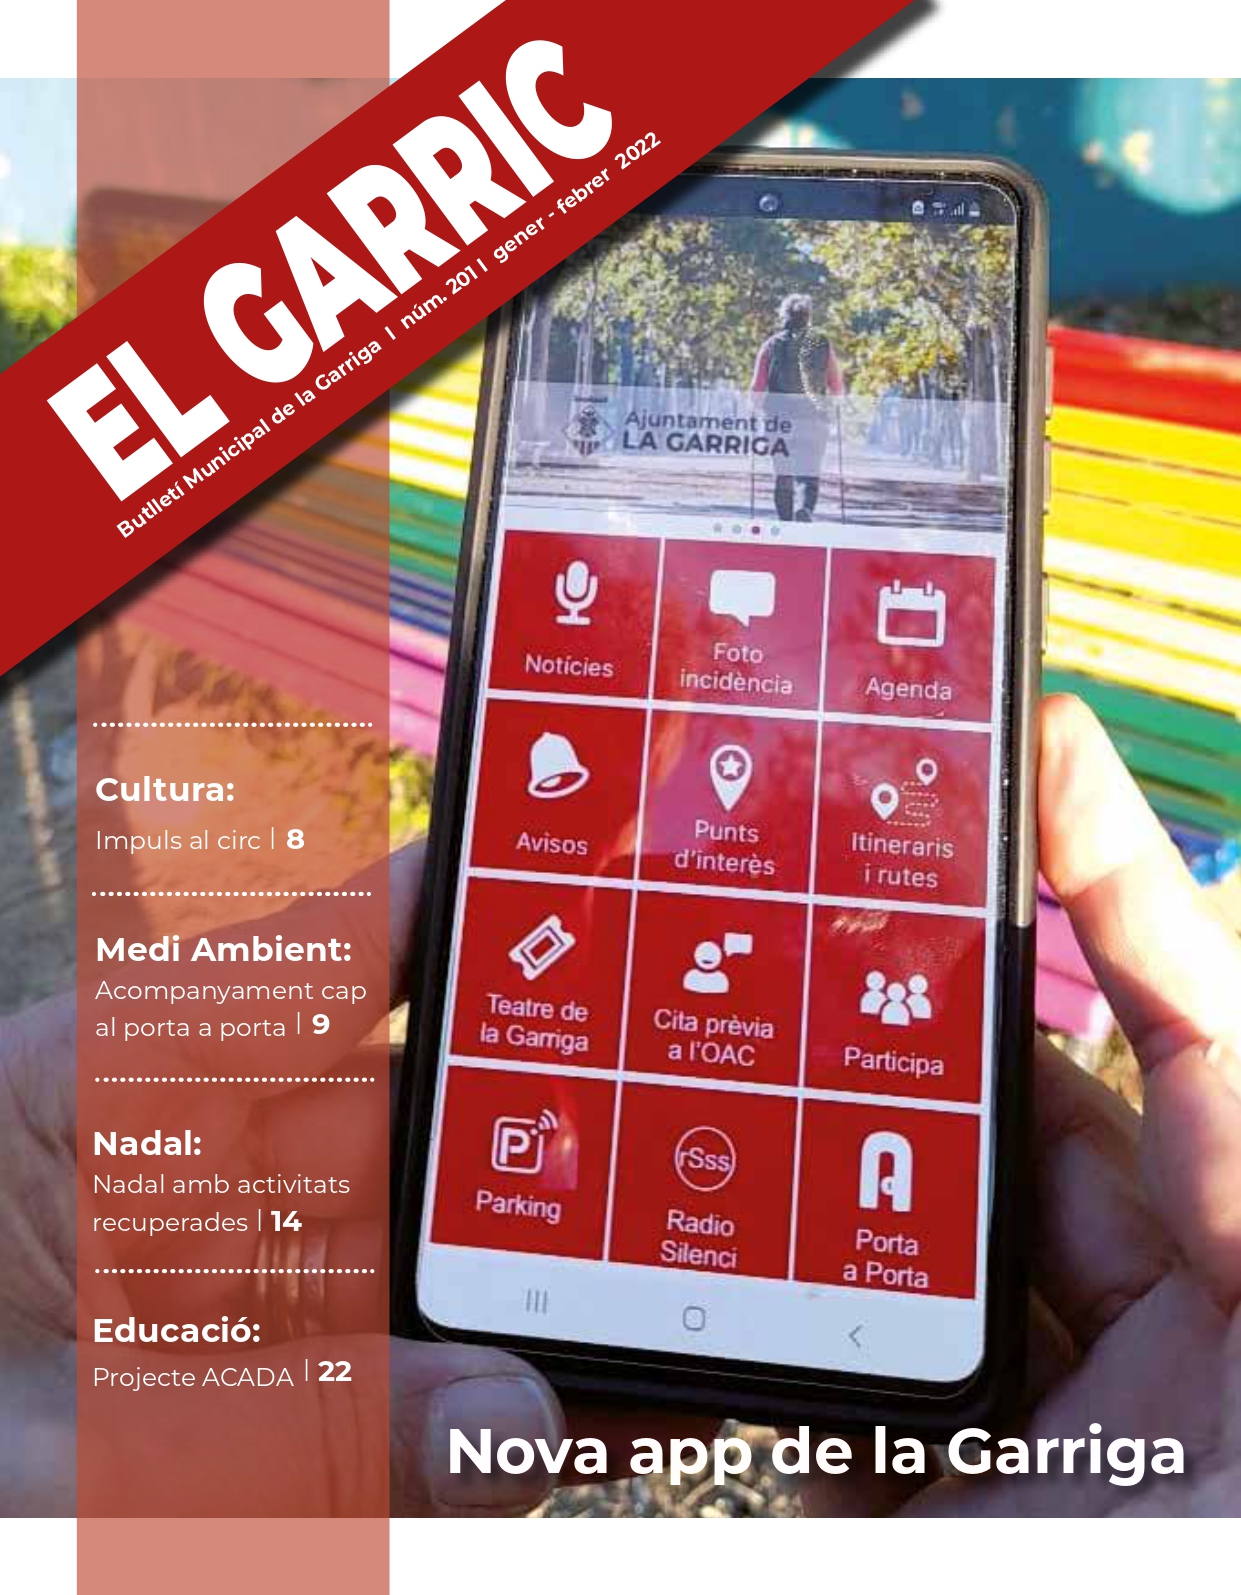 La nova App de la Garriga, al butlletí municipal El Garric